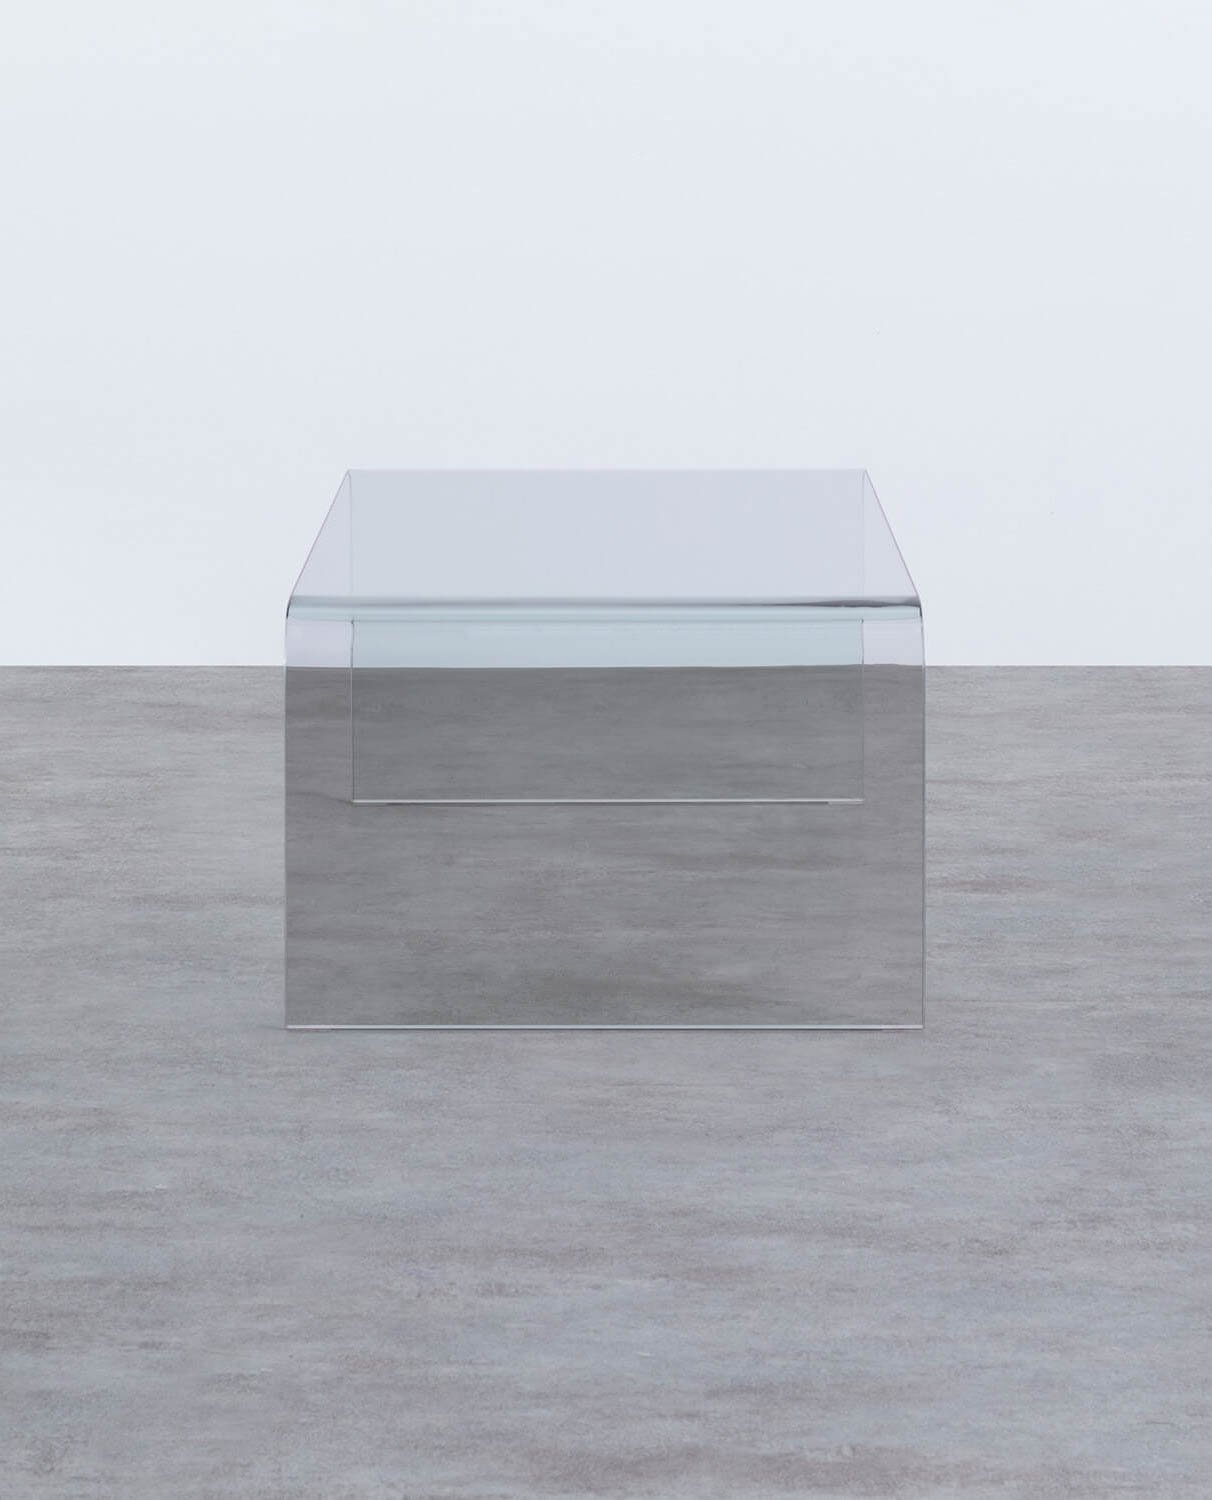 Tavolino Rettangolare in Cristallo Temperato (120x60 cm) Curve 